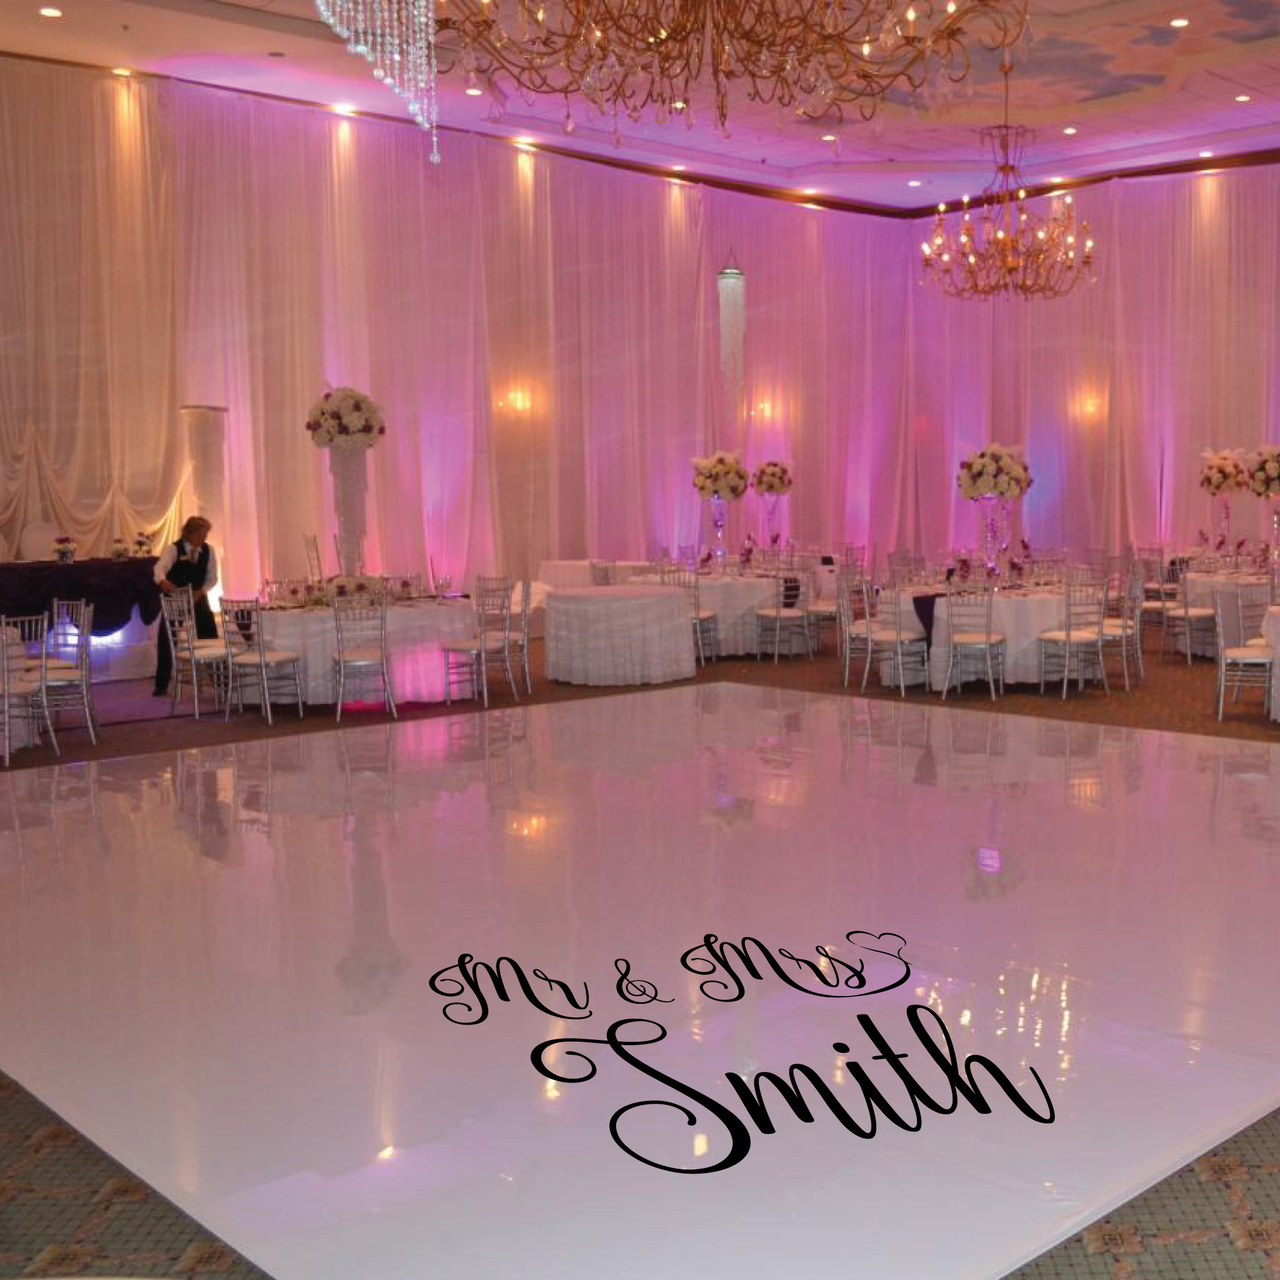 Mr & Mrs Personalised Wedding Dance Floor Decal